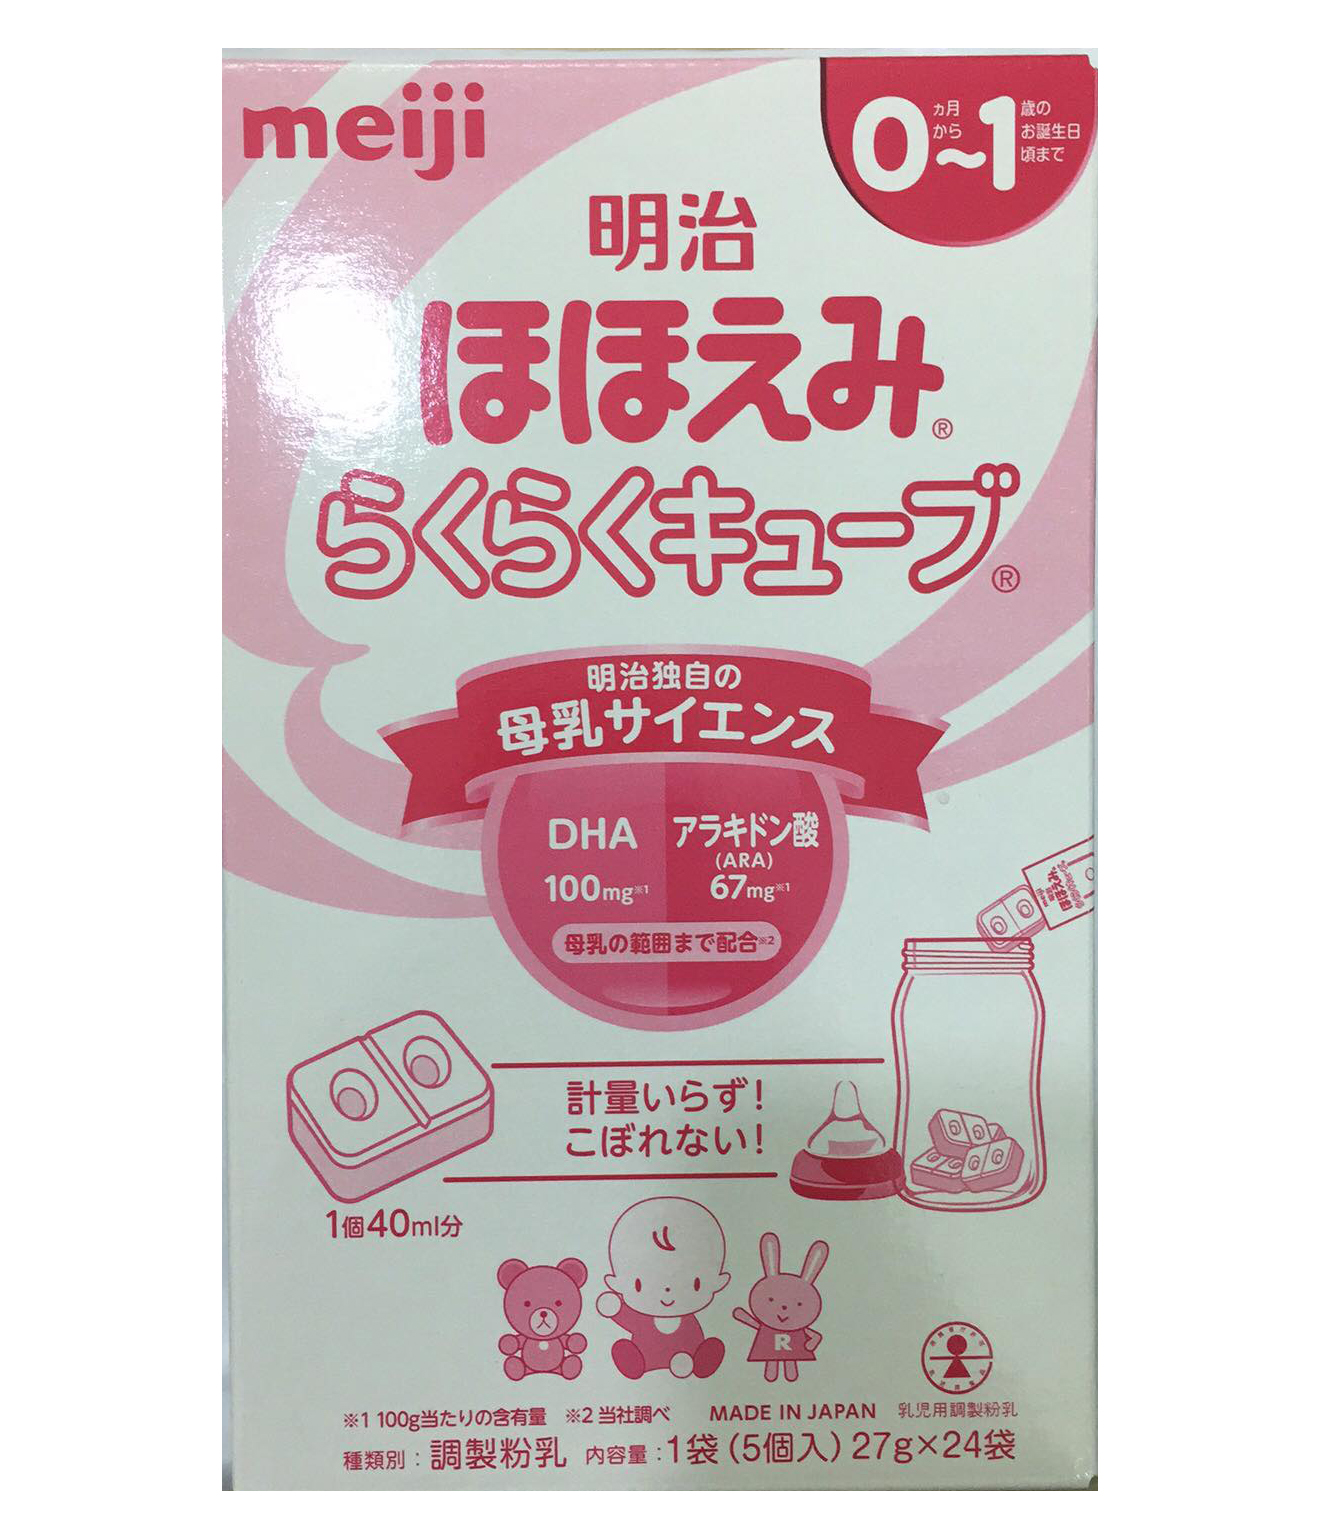 Sữa Meiji số 0 dạng thanh cho trẻ từ 0 đến 12 tháng tuổi tiện dụng  Ưu điểm của sản phẩm